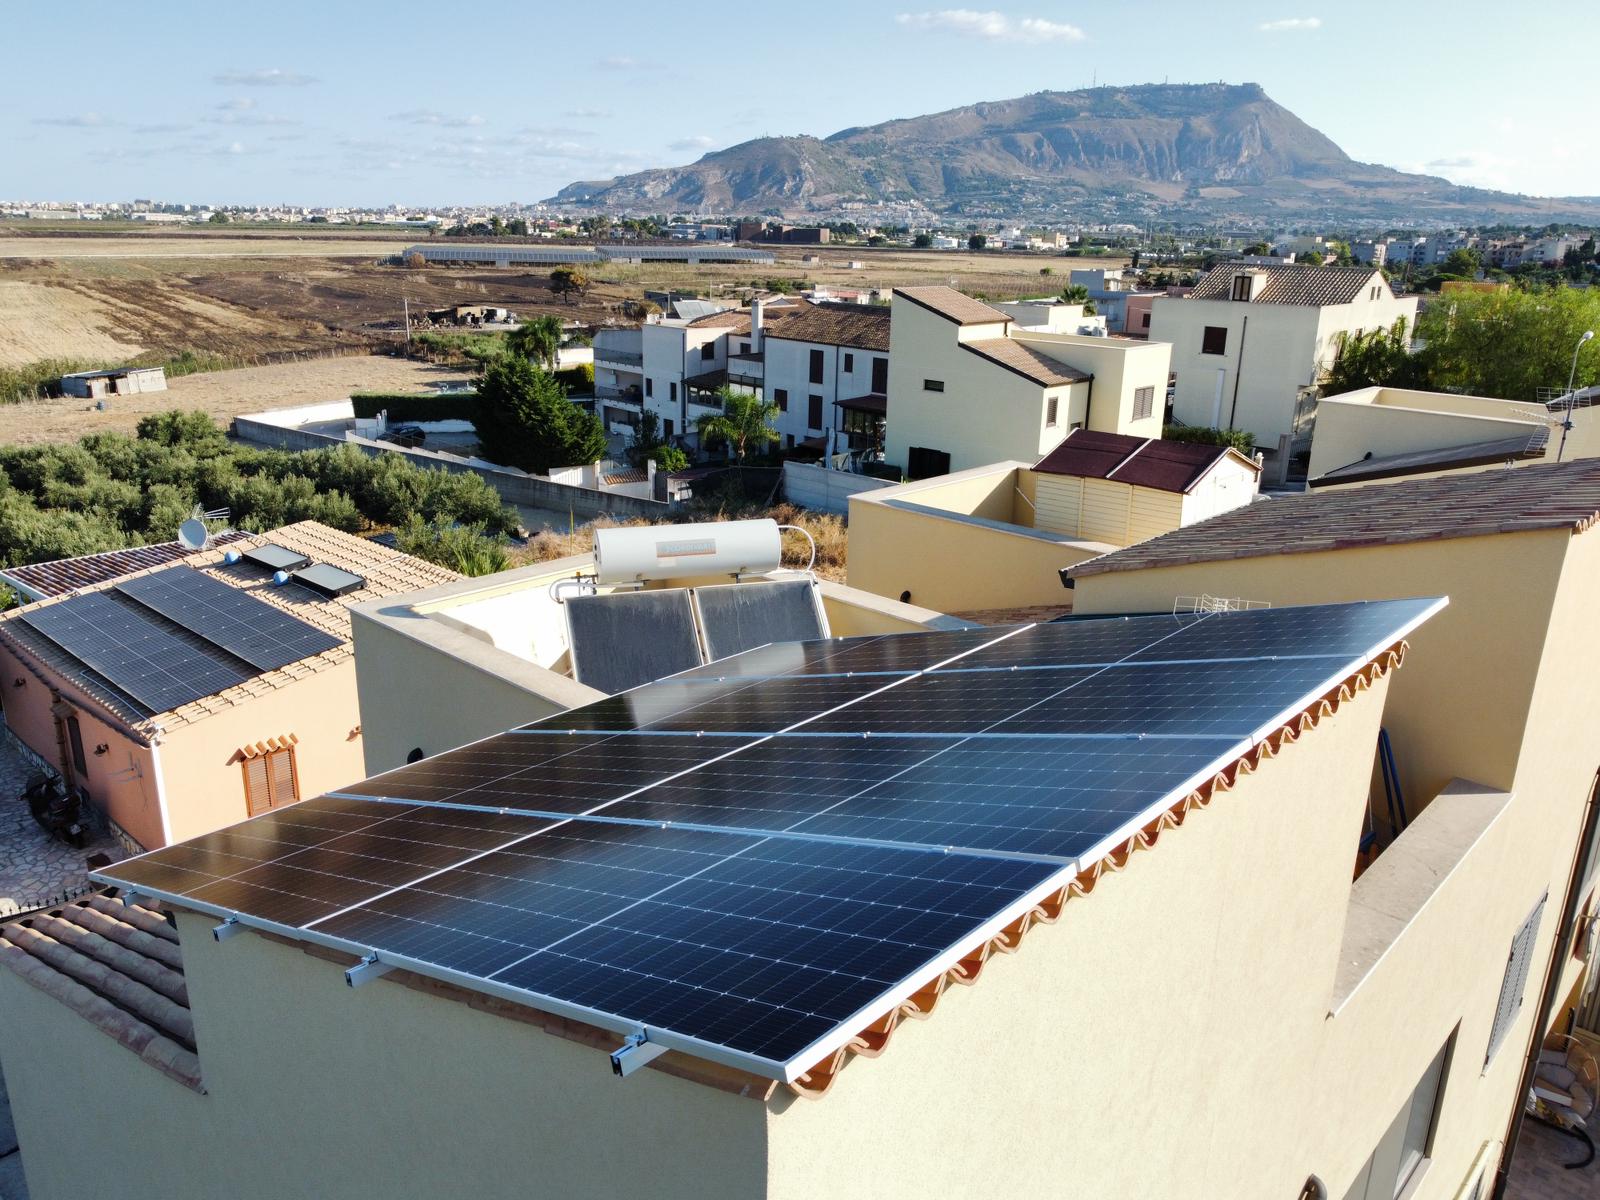 ✅ Nuova installazione Sit Impianti 🏠🌞💡

➡ Impianto #fotovoltaico ⚡ Impianto